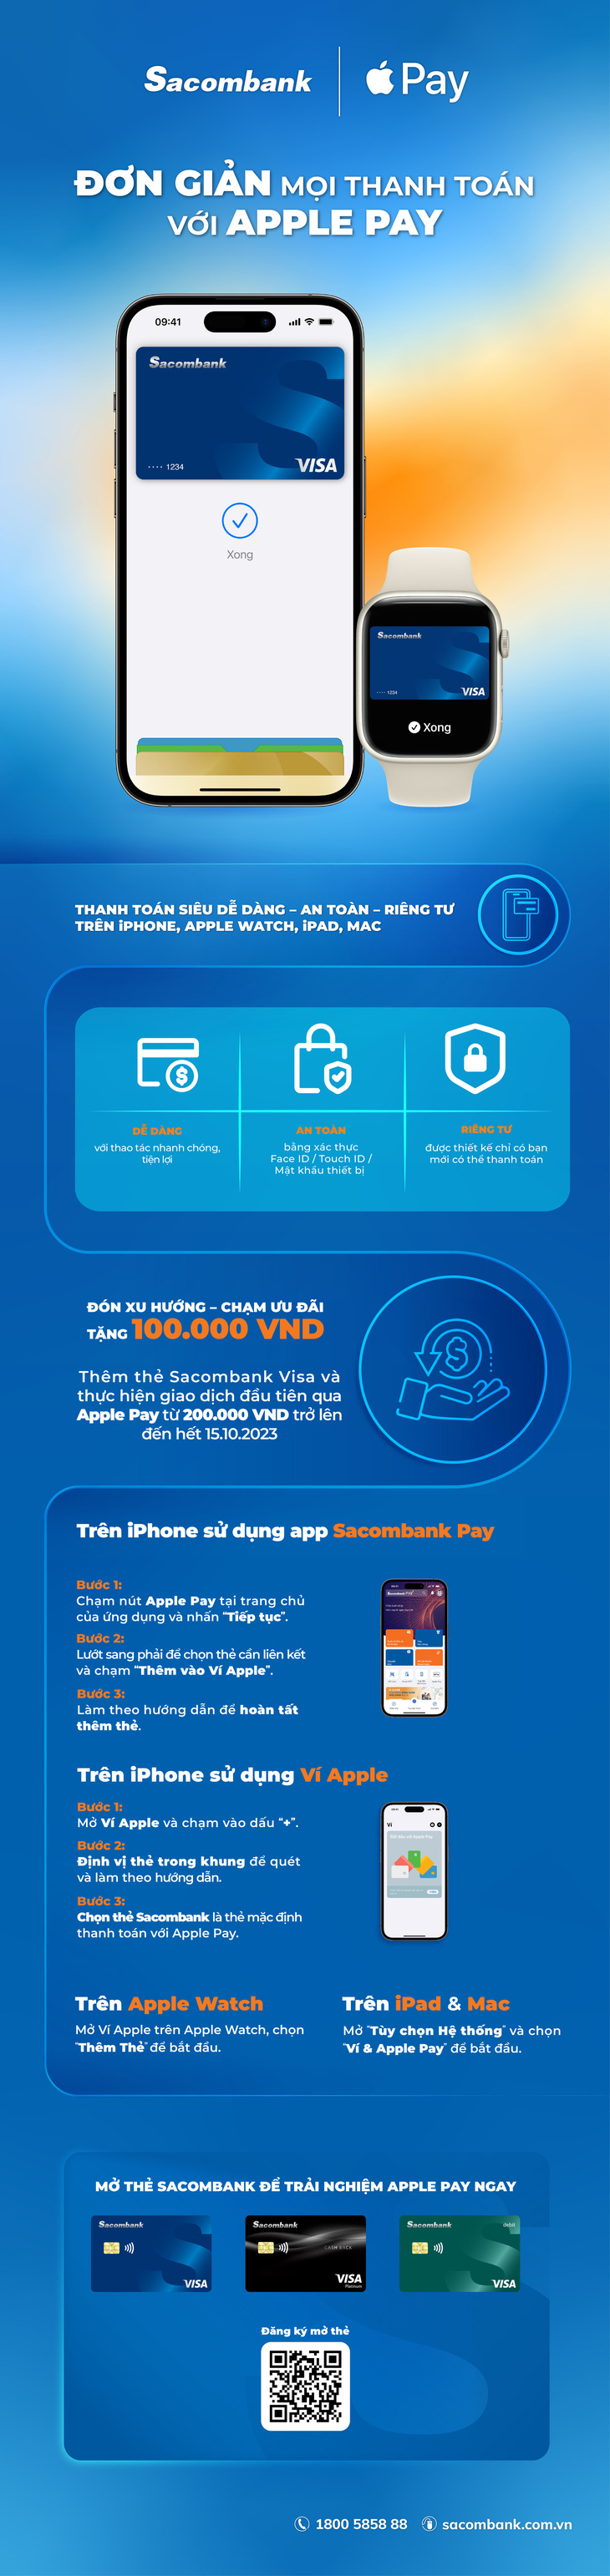 Đơn giản mọi thanh toán với Apple Pay & thẻ Sacombank Visa - Ảnh 2.